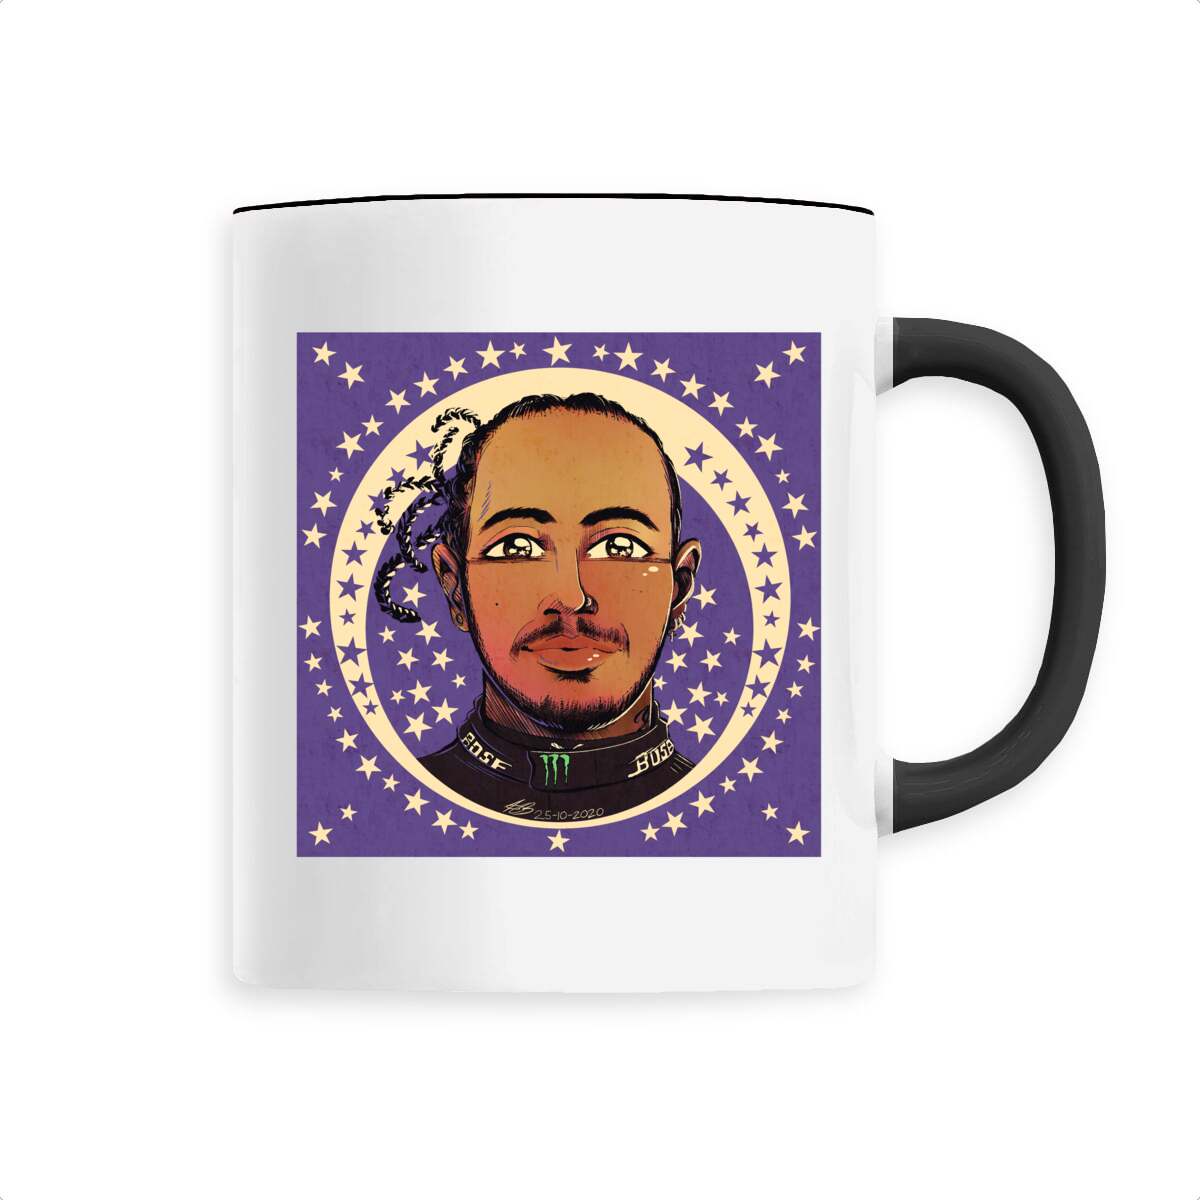 Hamilton - Ceramic mug